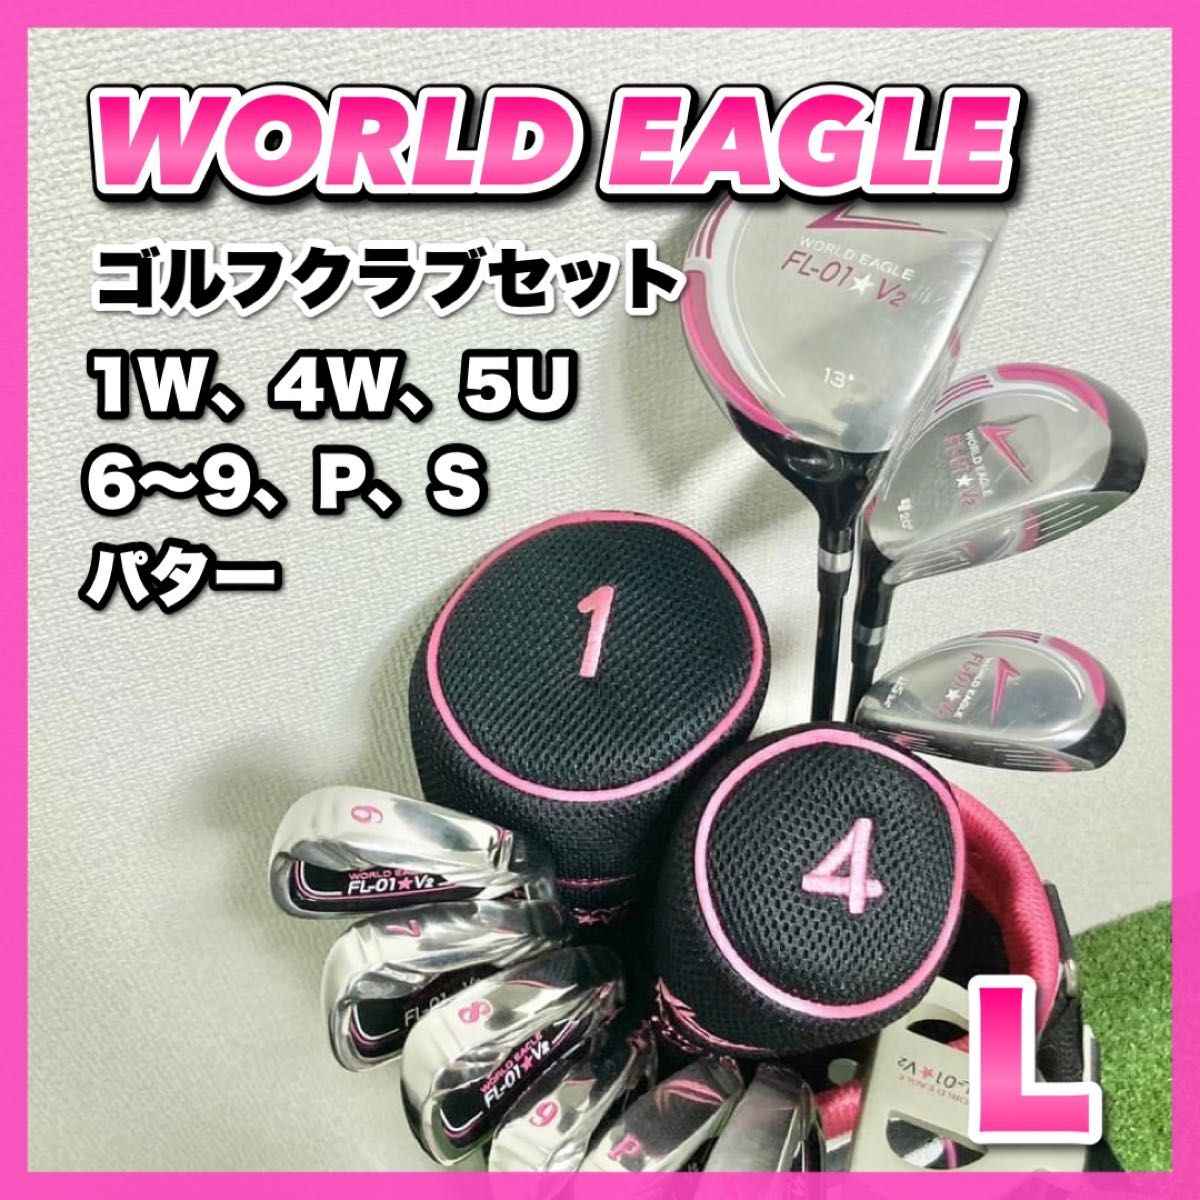 WORLD EAGLE(ワールドイーグル)レディースクラブセット ゴルフ 10本